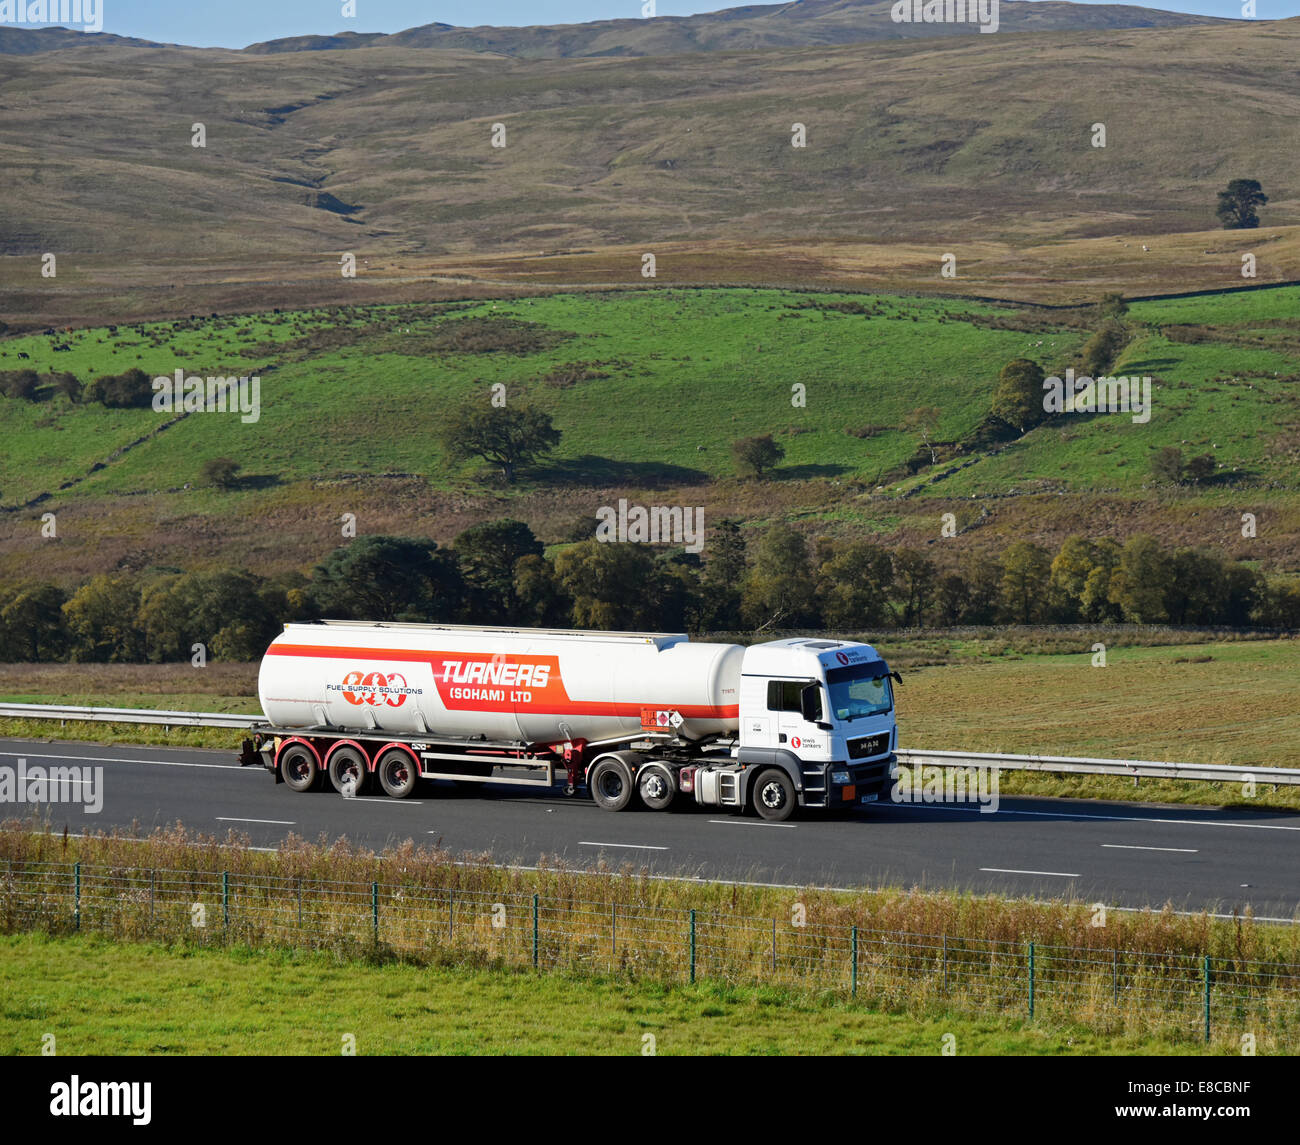 Les navires-citernes pour chalets Lewis (Soham) Ltd., camion-citerne de carburant. Autoroute M6, direction nord. Shap, Cumbria, Angleterre, Royaume-Uni, Europe. Banque D'Images